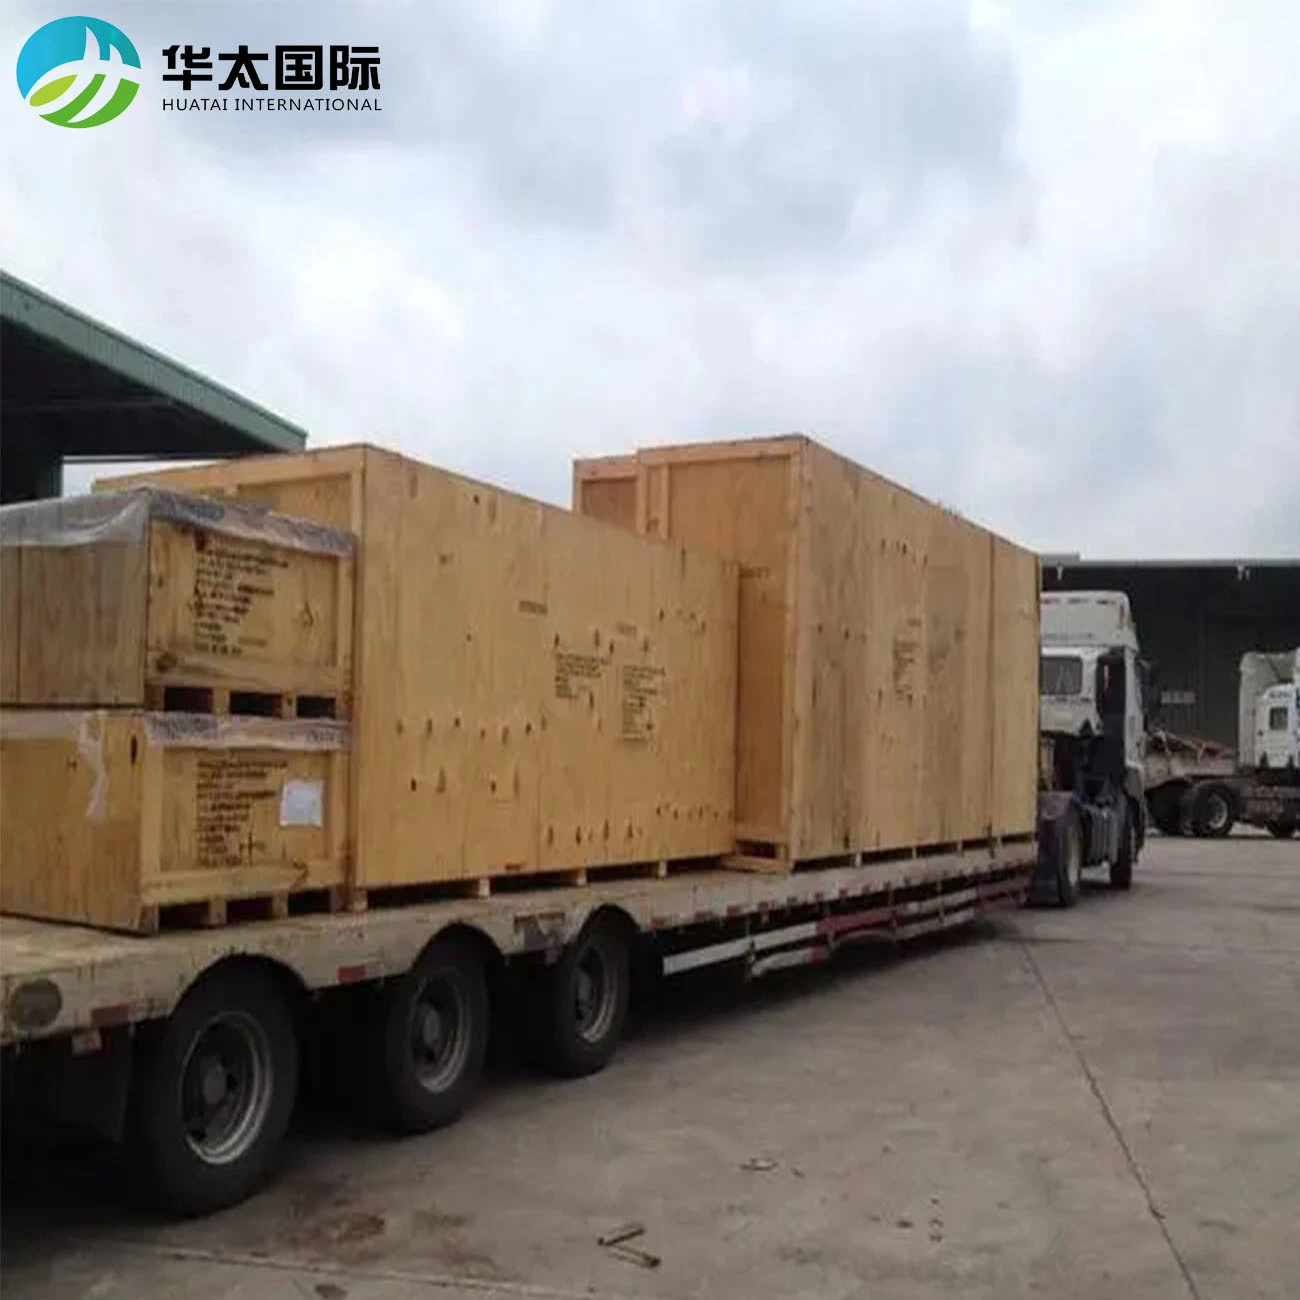 النقل الدولي اللوجستي من الصين إلى أيرلندا نقل البضائع الكبير DDU/DDP لباب وكيل الشحن